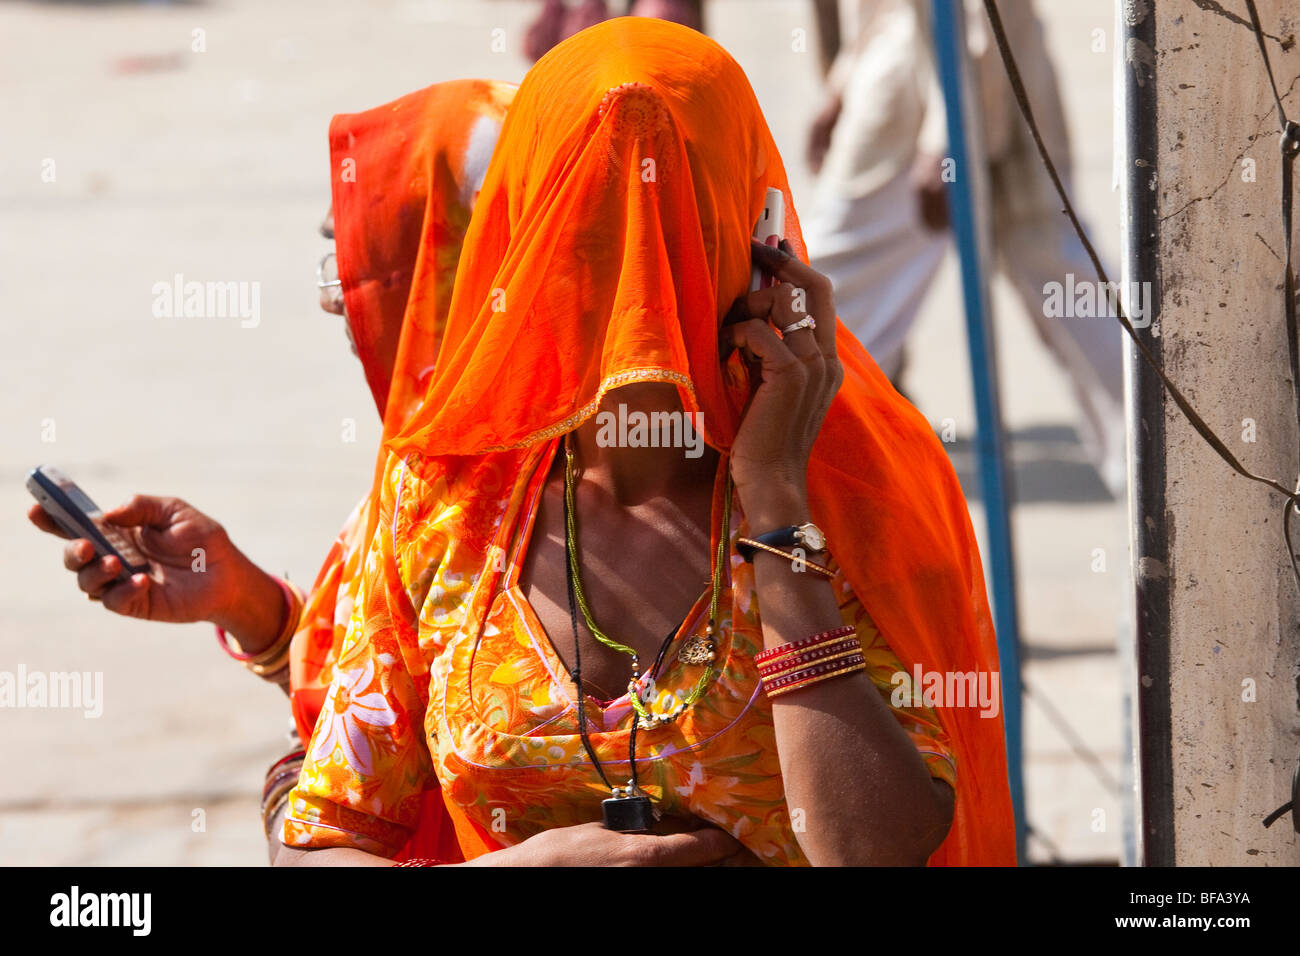 Rajput Woman talking on a mobile phone à la foire de Pushkar Inde Chameau Banque D'Images